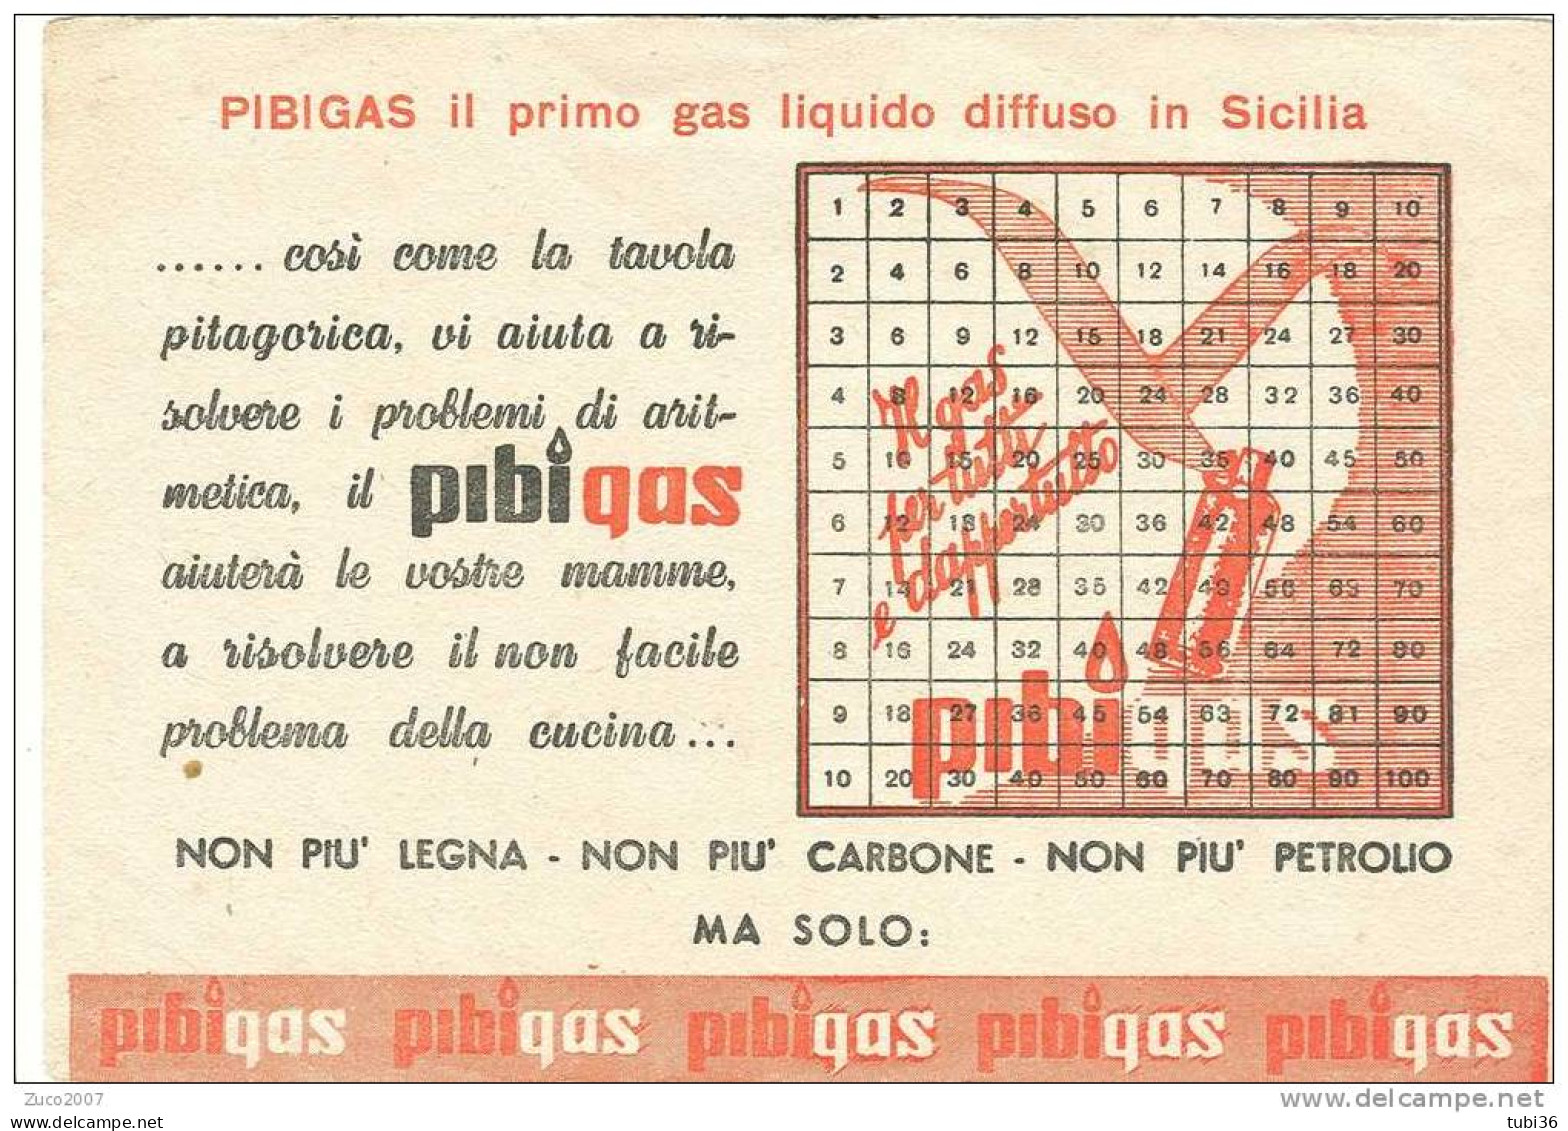 PIBIGAS - CARTA PUBBLICITARIA  DIFFUSIONE GAS IN SICILIA. - Elektriciteit En Gas